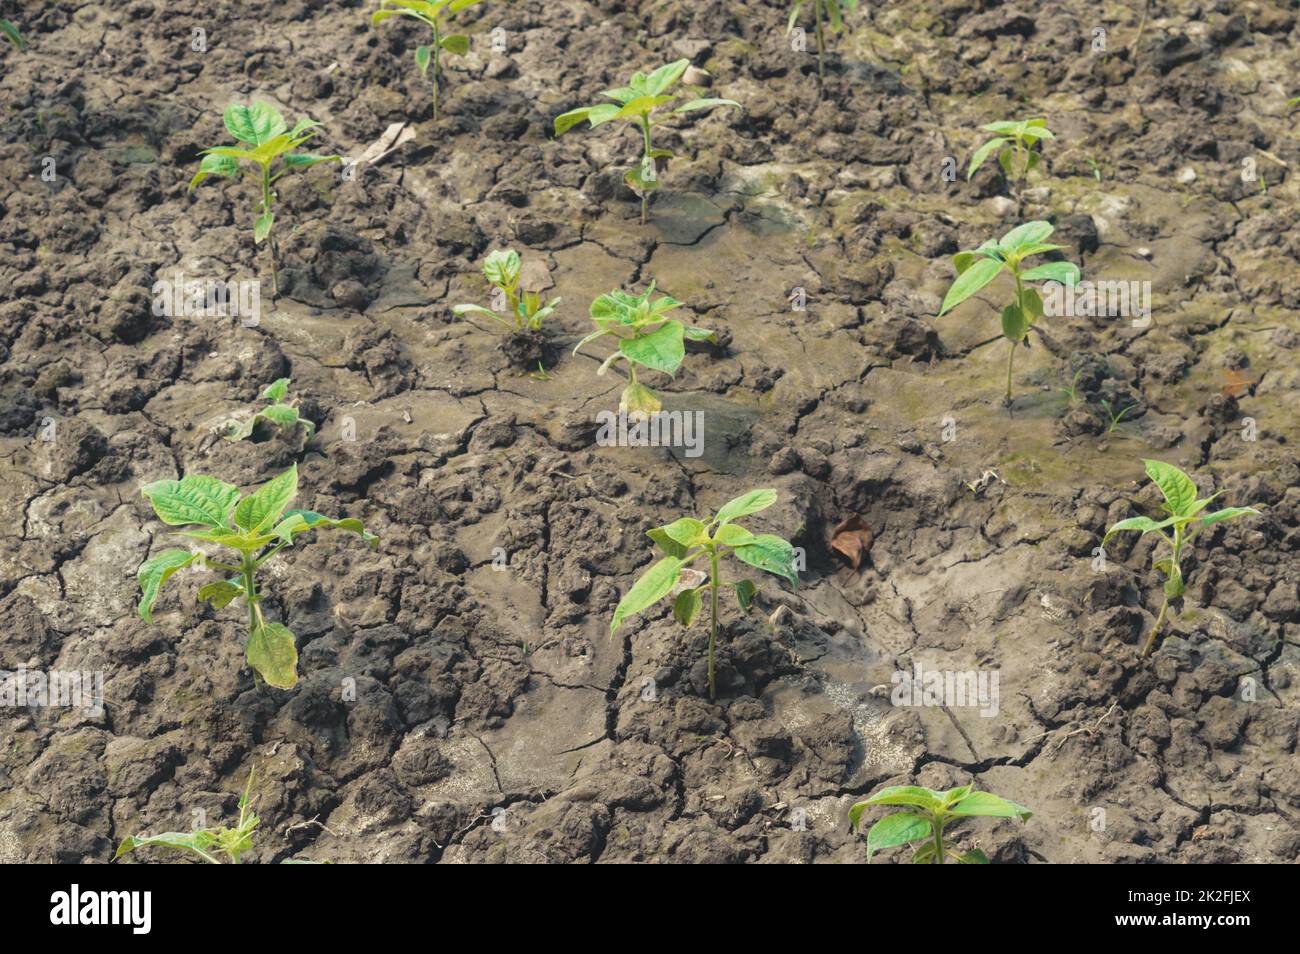 Landwirtschaft. Pflanzen anbauen. Pflanzenkeimling. Junge Babypflanzen wachsen in Keimsequenz auf fruchtbarem Boden Hintergrund Stockfoto